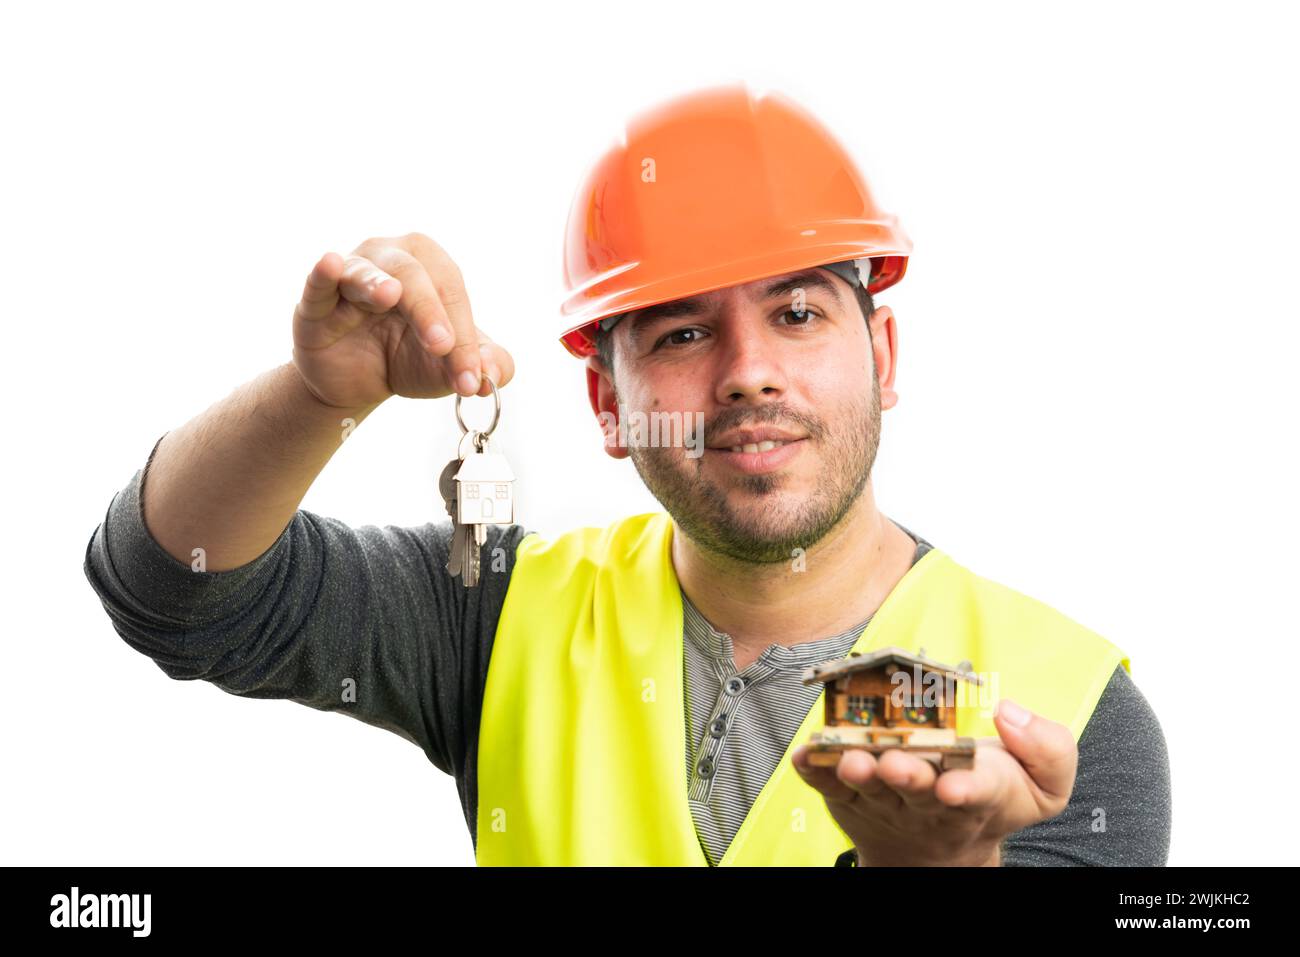 Lächelnder erwachsener Baumeister-Mann mit orangefarbenem Schutzhelm und gelber Weste, der Miniatur-Holzhaus mit Hauptschlüsseln auf weißem Hintergrund präsentiert Stockfoto